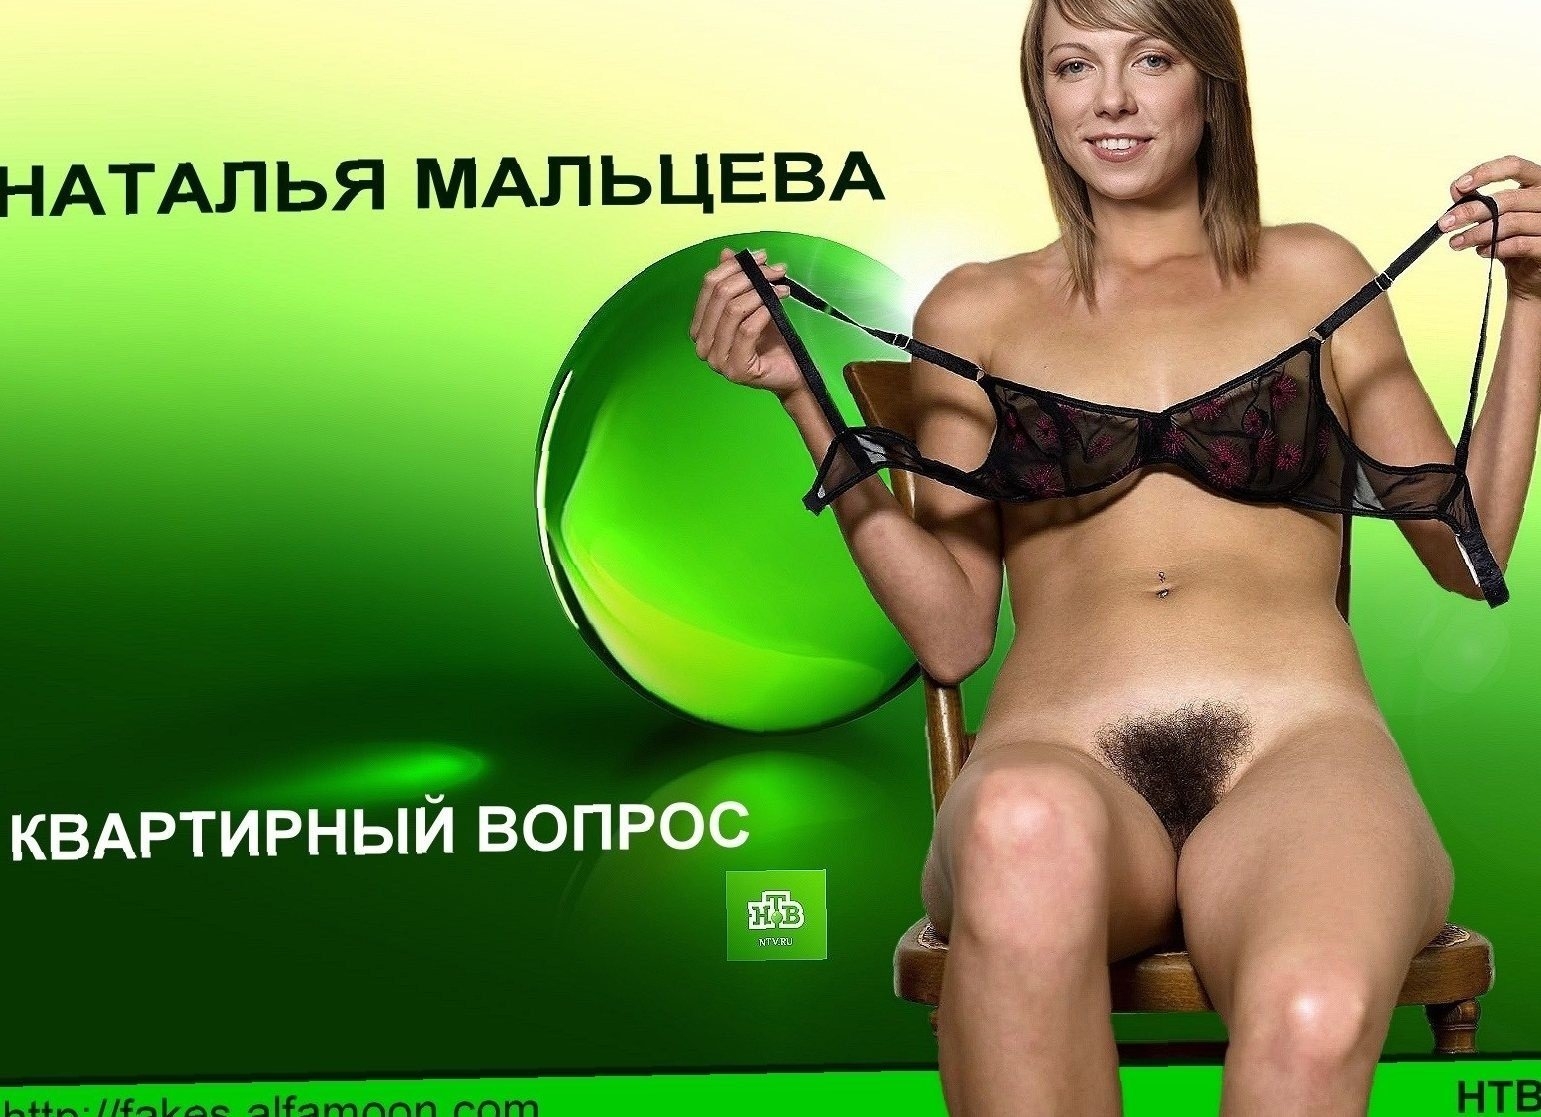 Российские каналы с порно фото 14